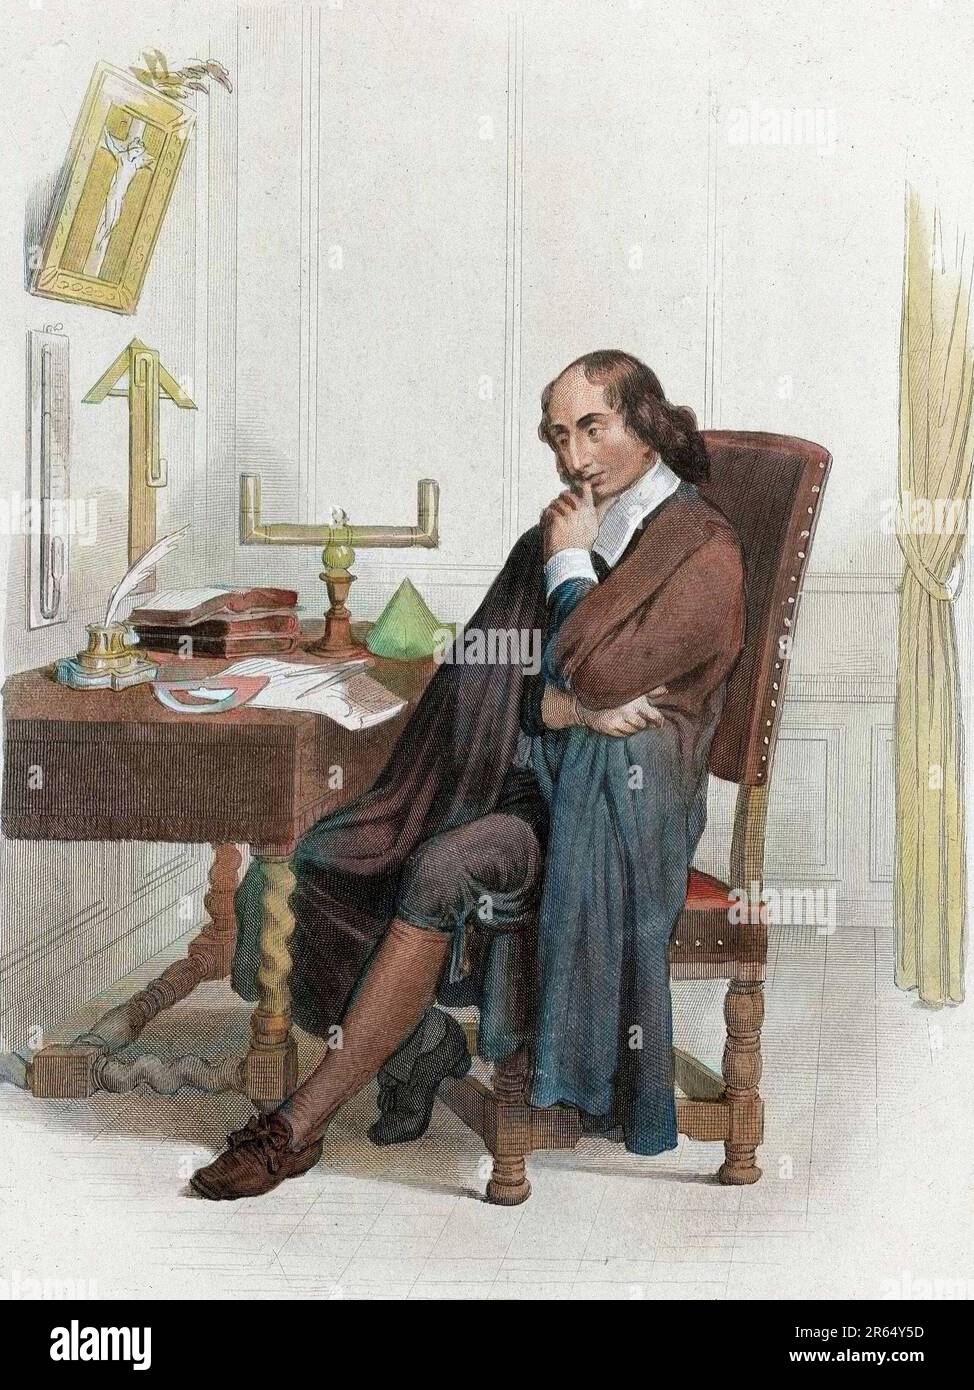 Retrato de Blaise Pascal, philosophe, mathématicien et physicien francais (1623-1662). huecograbado versión 1830 Foto de stock